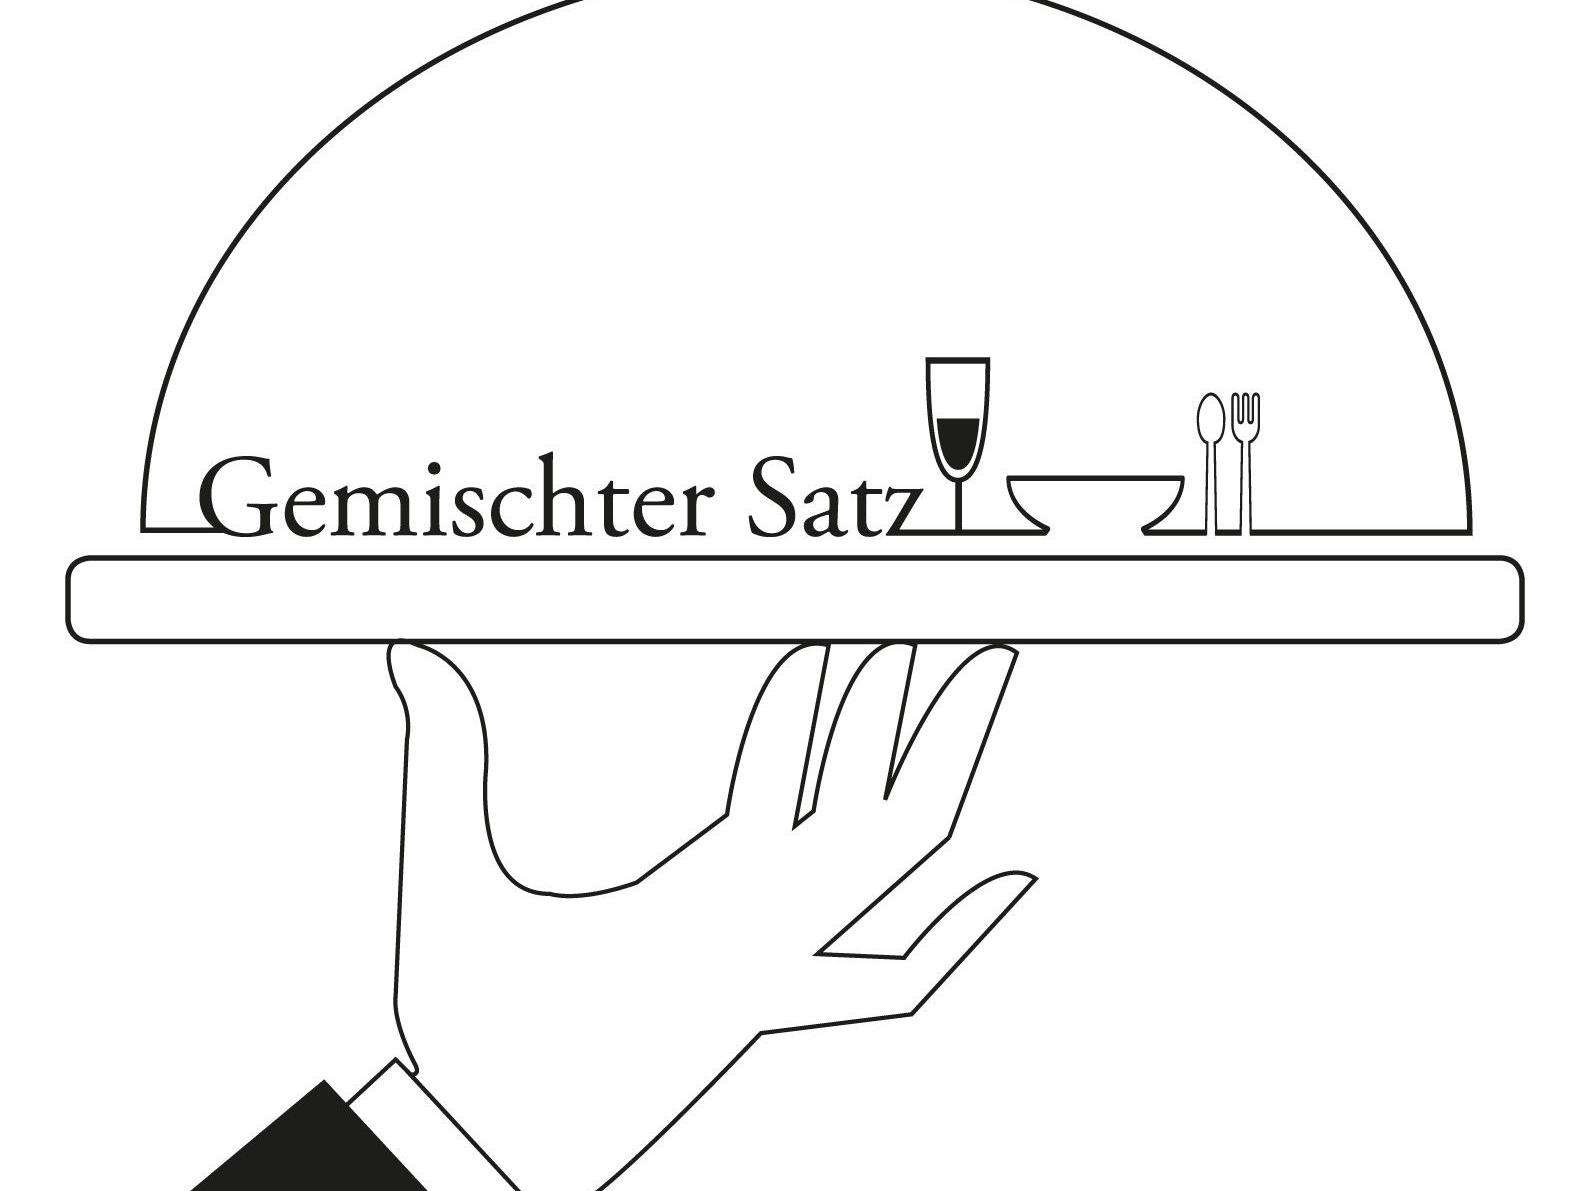 VIENNA.at verlost 3x2 Karten inkl. Dinner für "Gemischter Satz" im Wiener Rathauskeller.